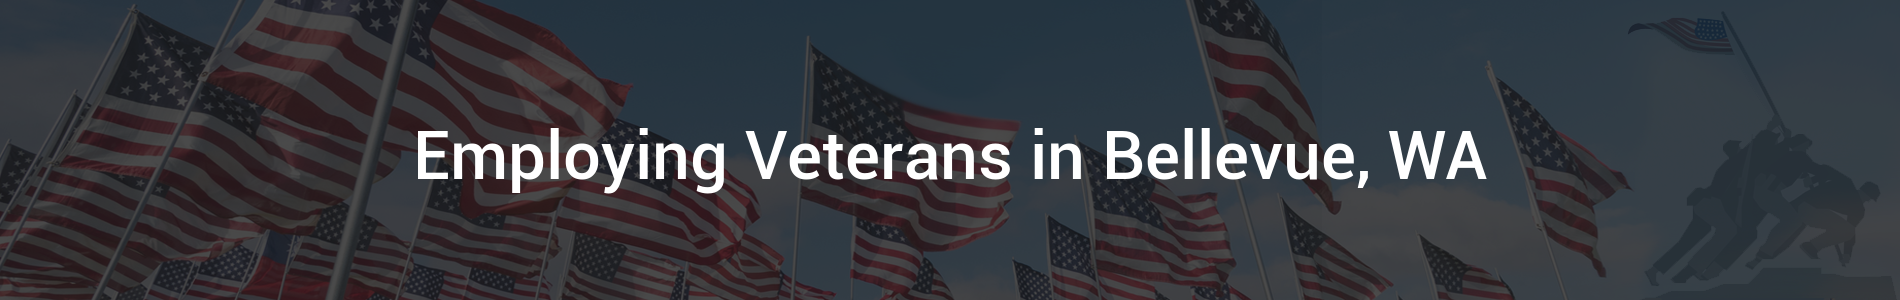 Veterans Hiring Our Heroes - Internal Banner